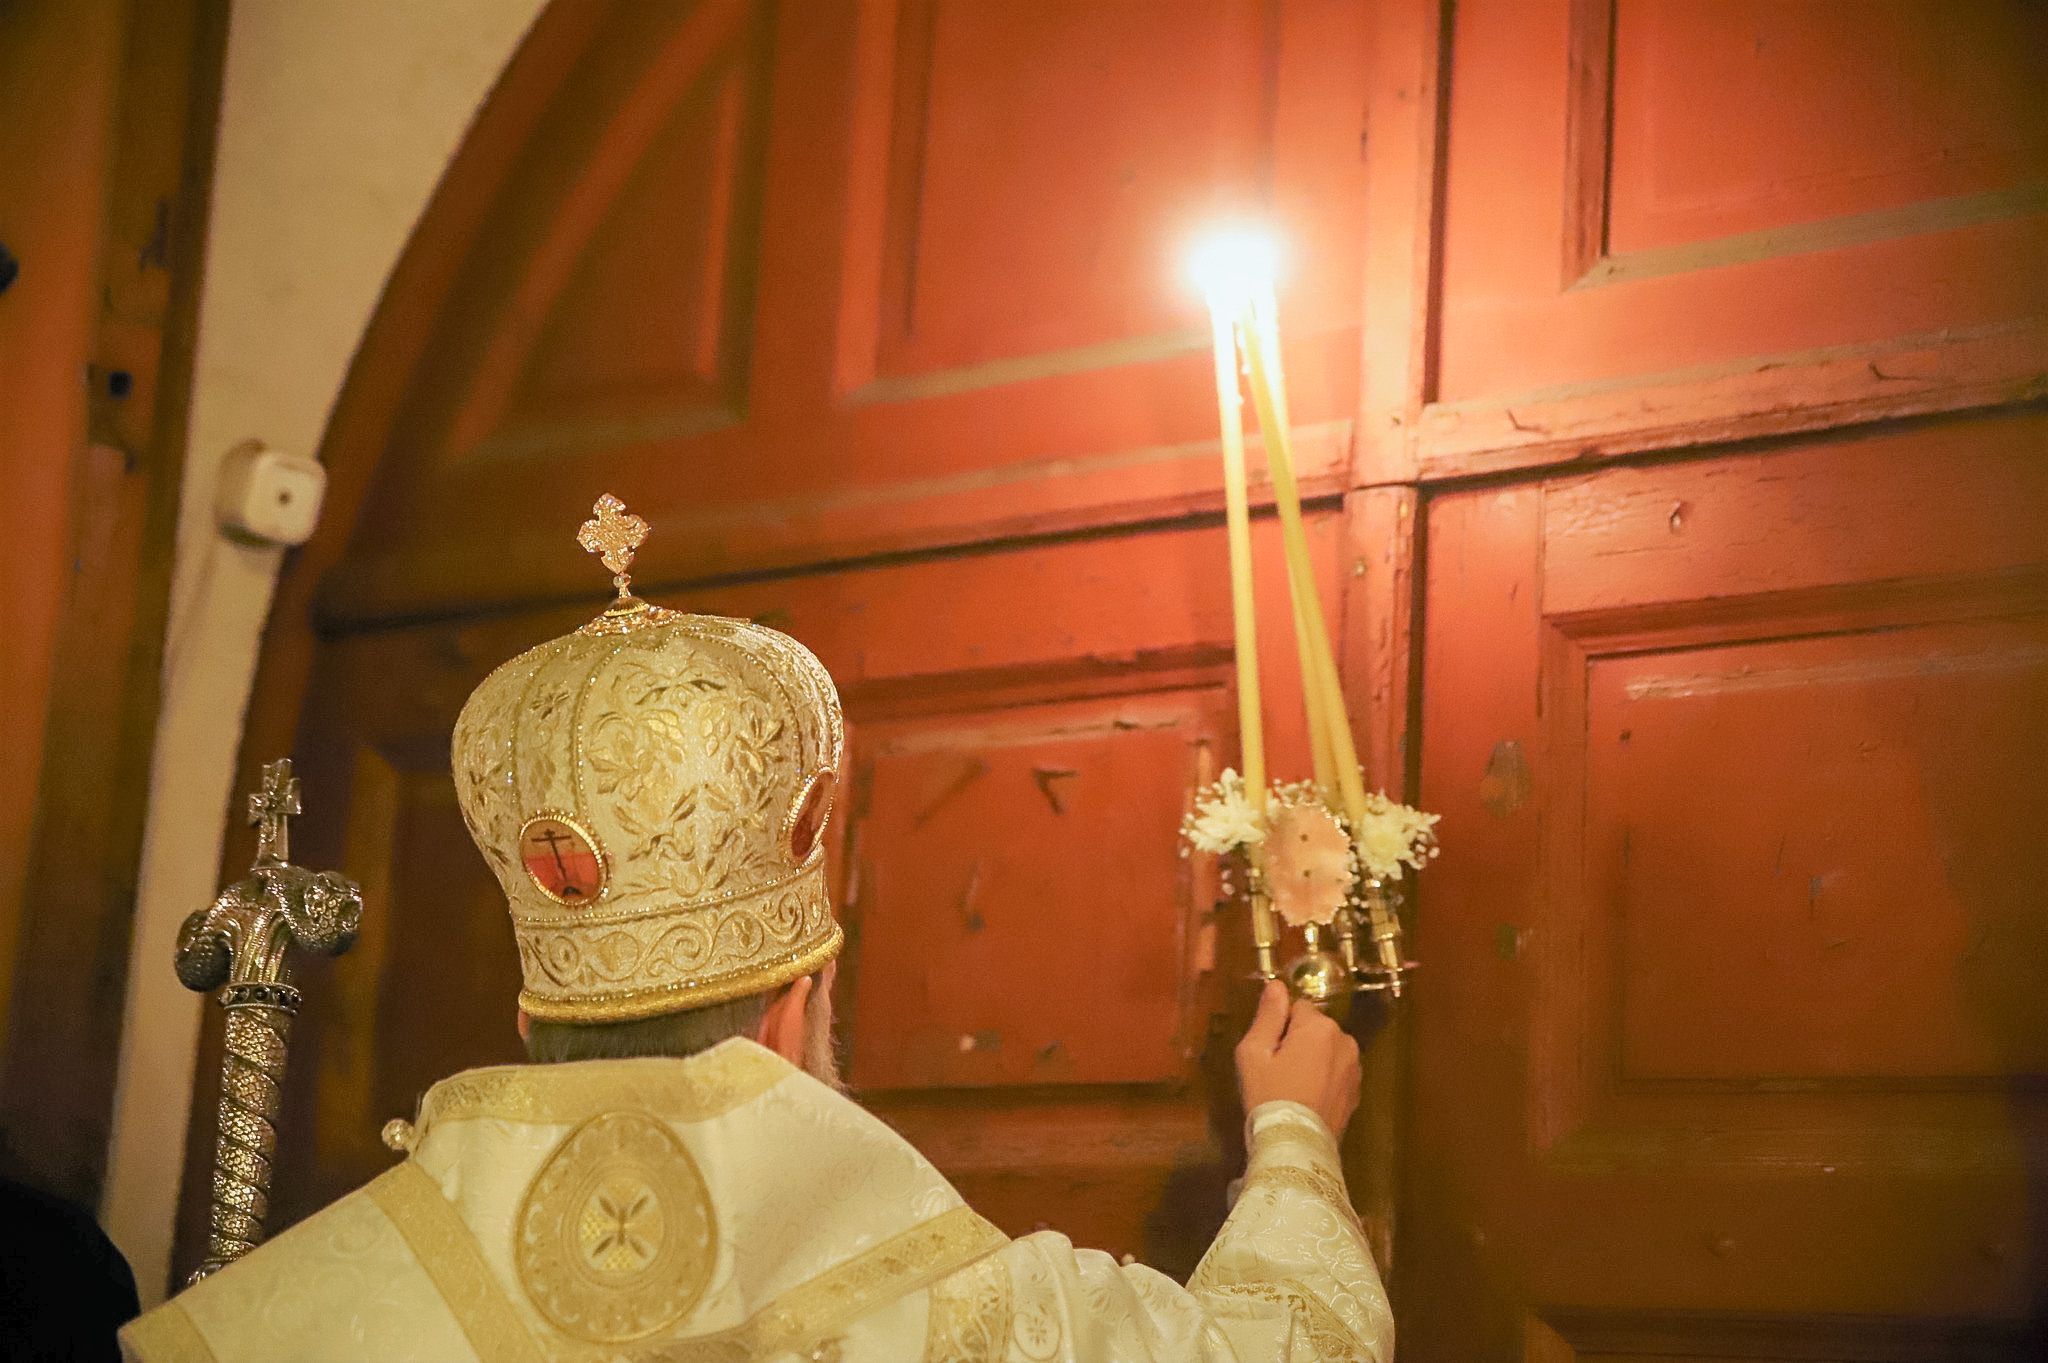 Gyerekeket fogdoshatott papként – vádemelés Debrecenben